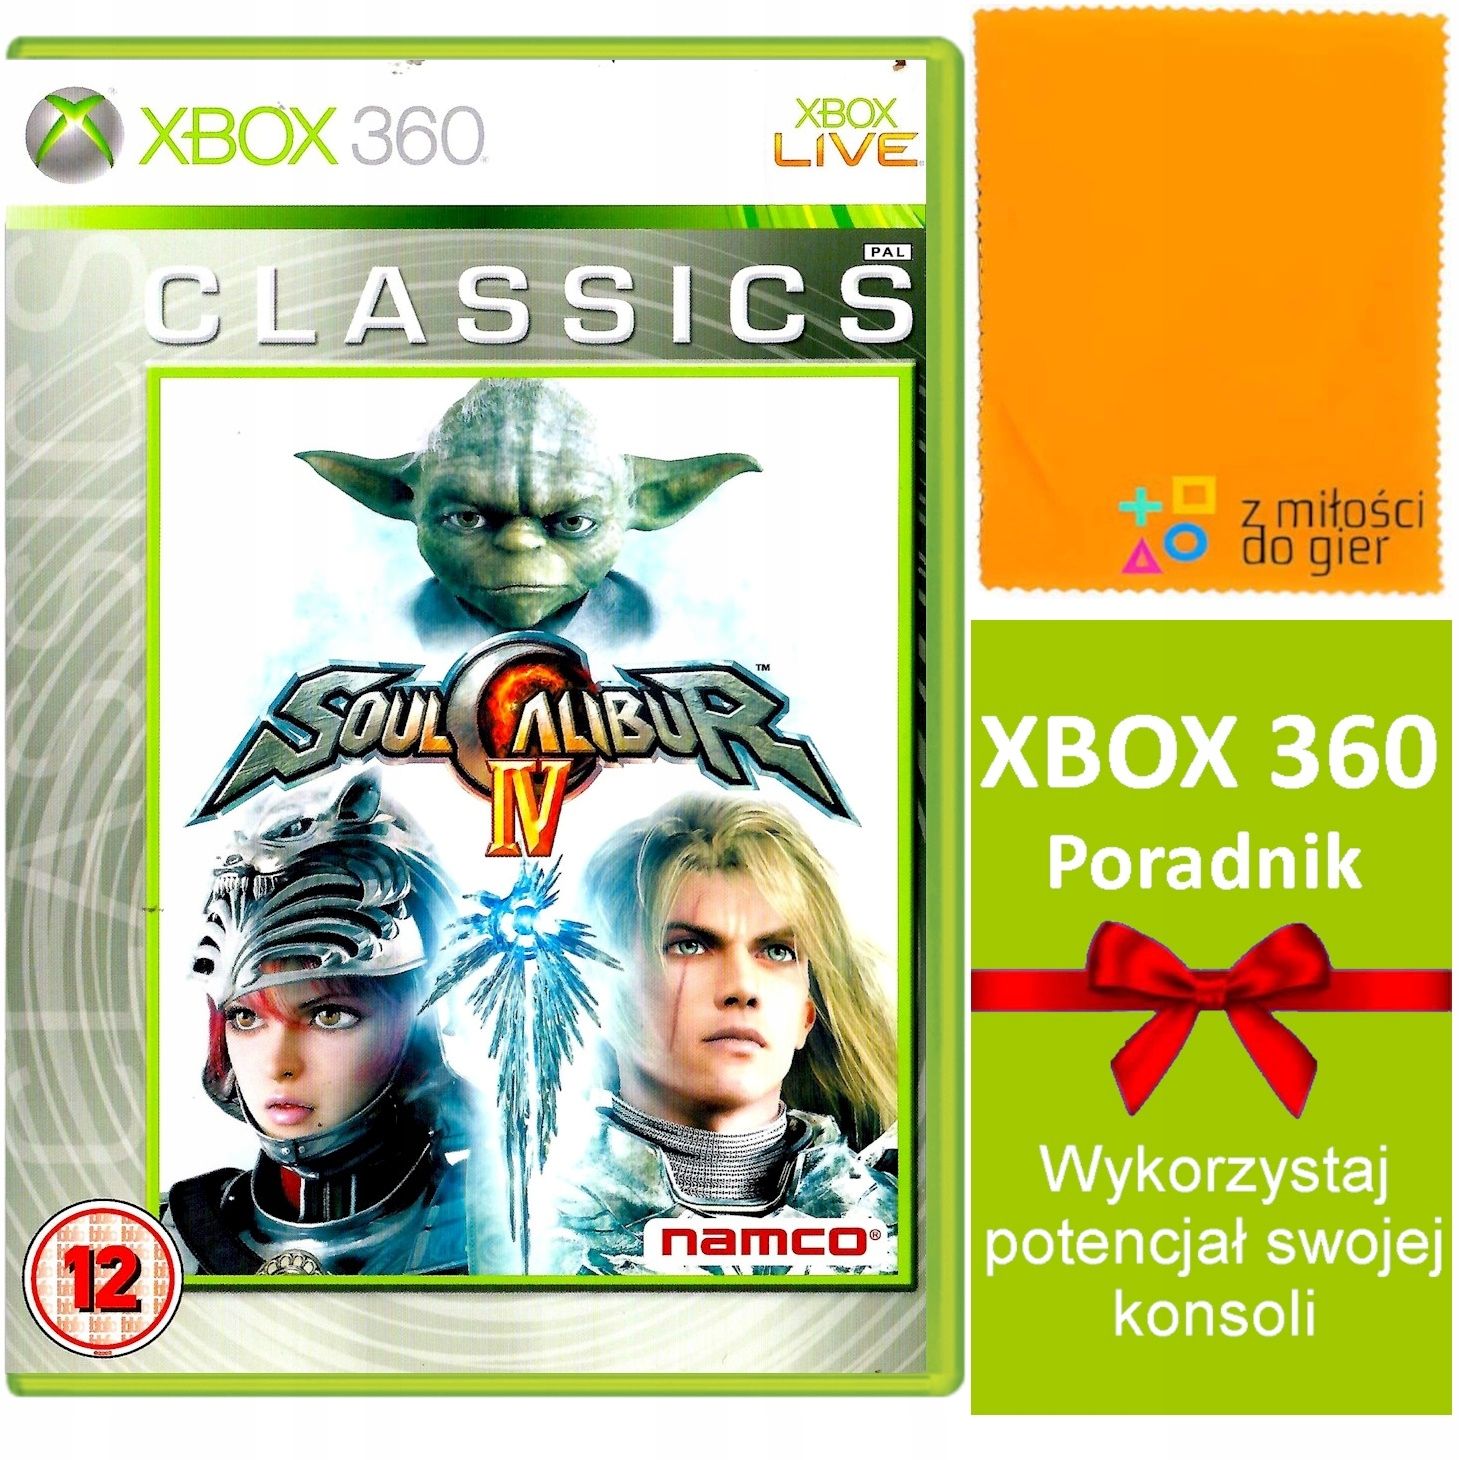 Xbox 360 Soulcalibur Iv szybka wysyłka